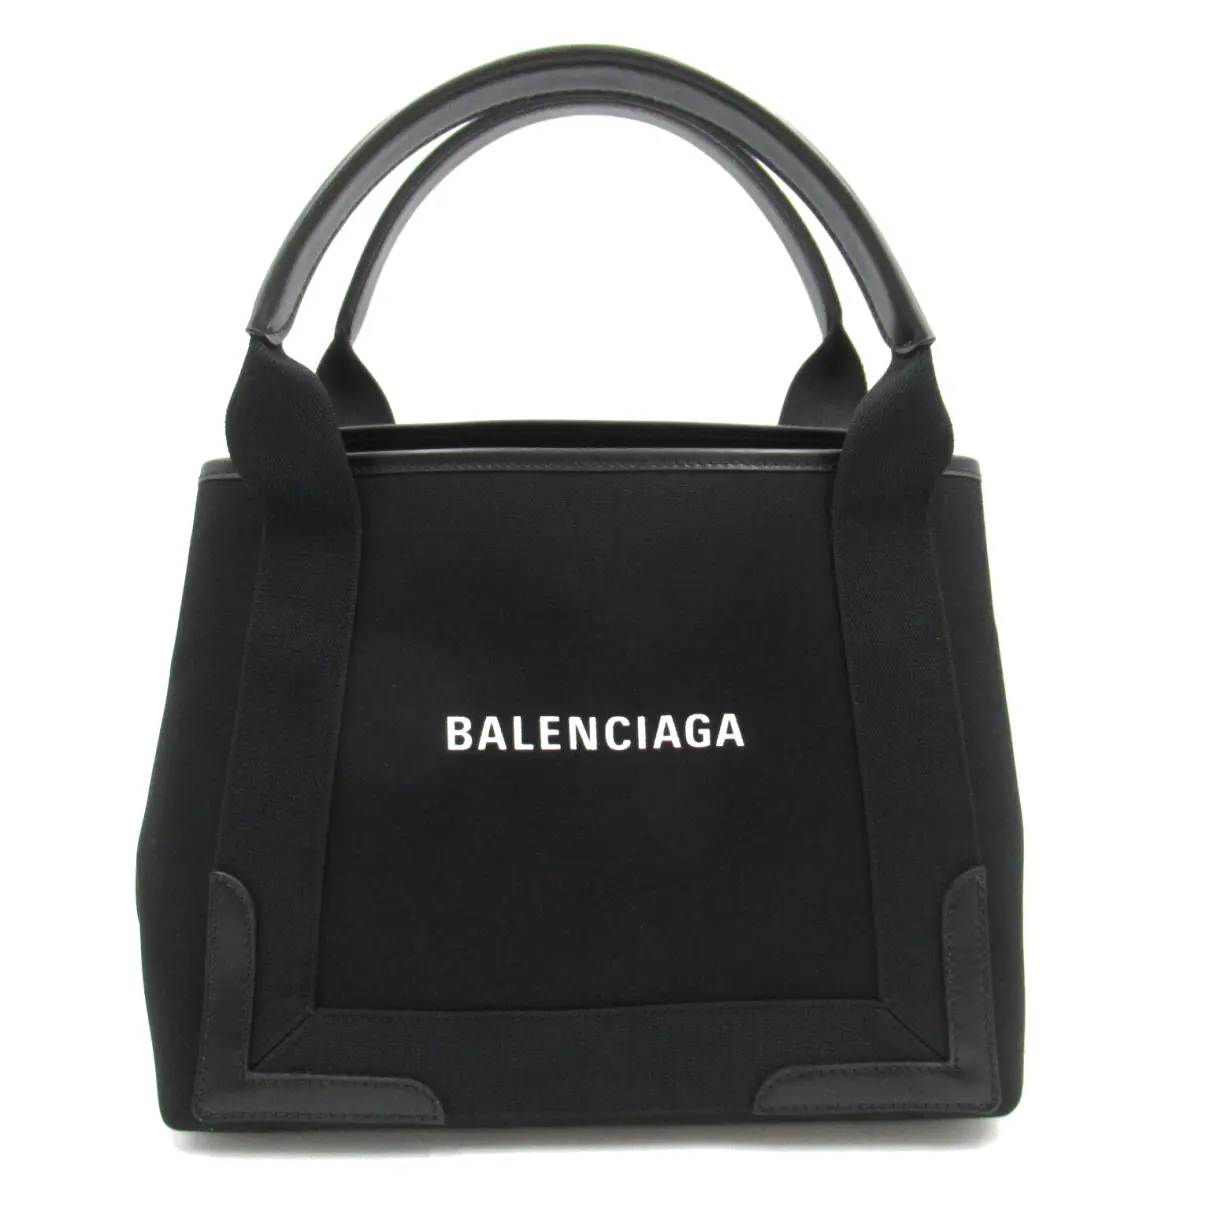 Buy Balenciaga Tote online